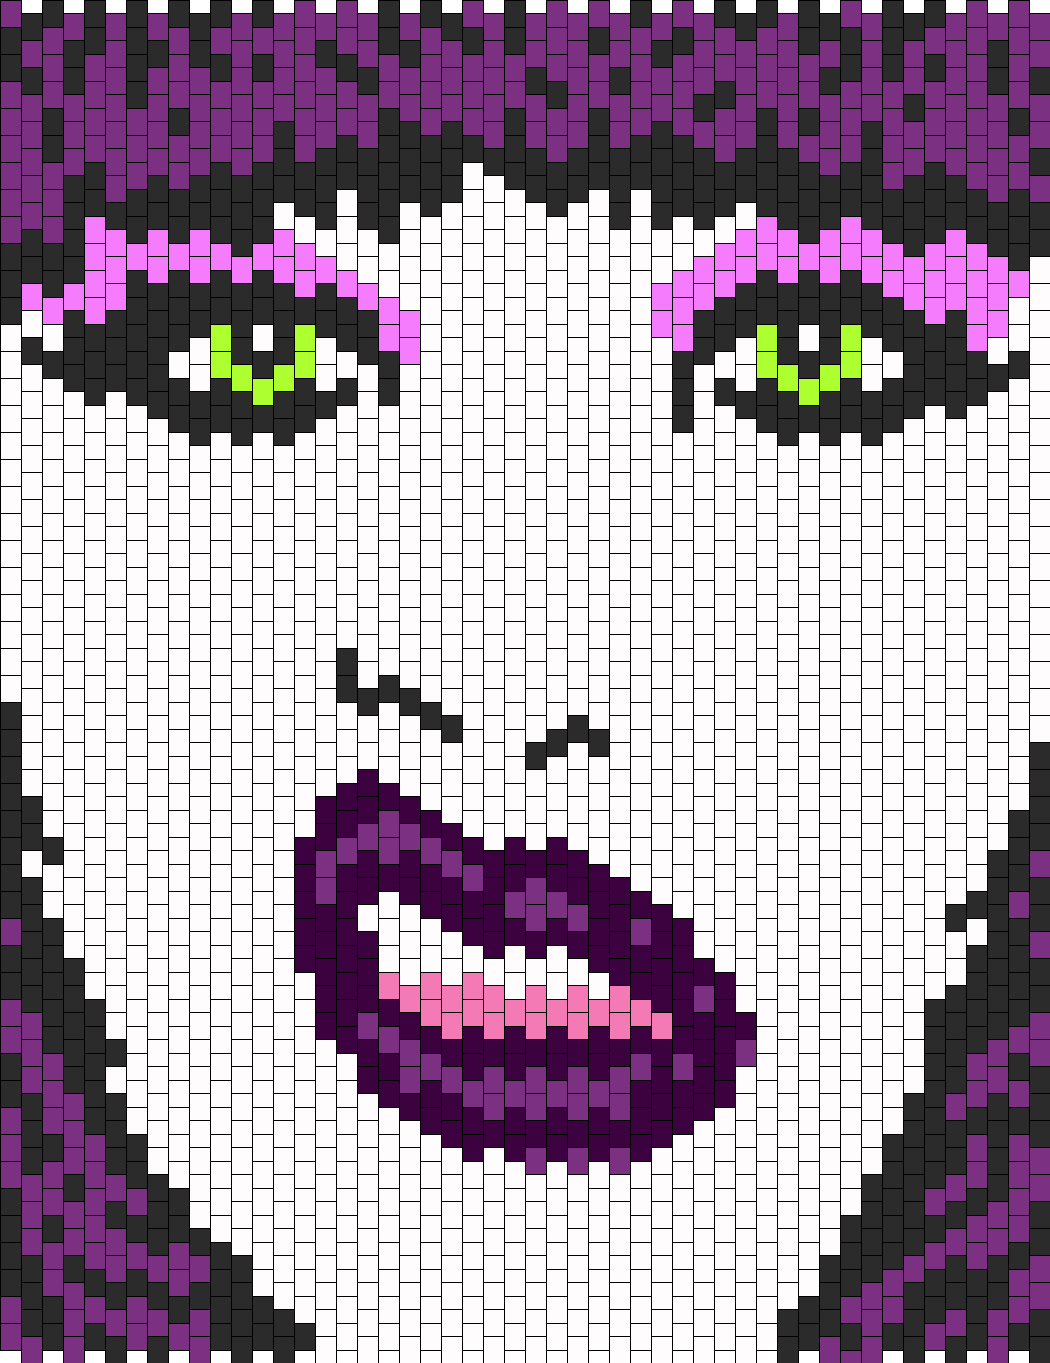 Sharon_Needles_in_purple